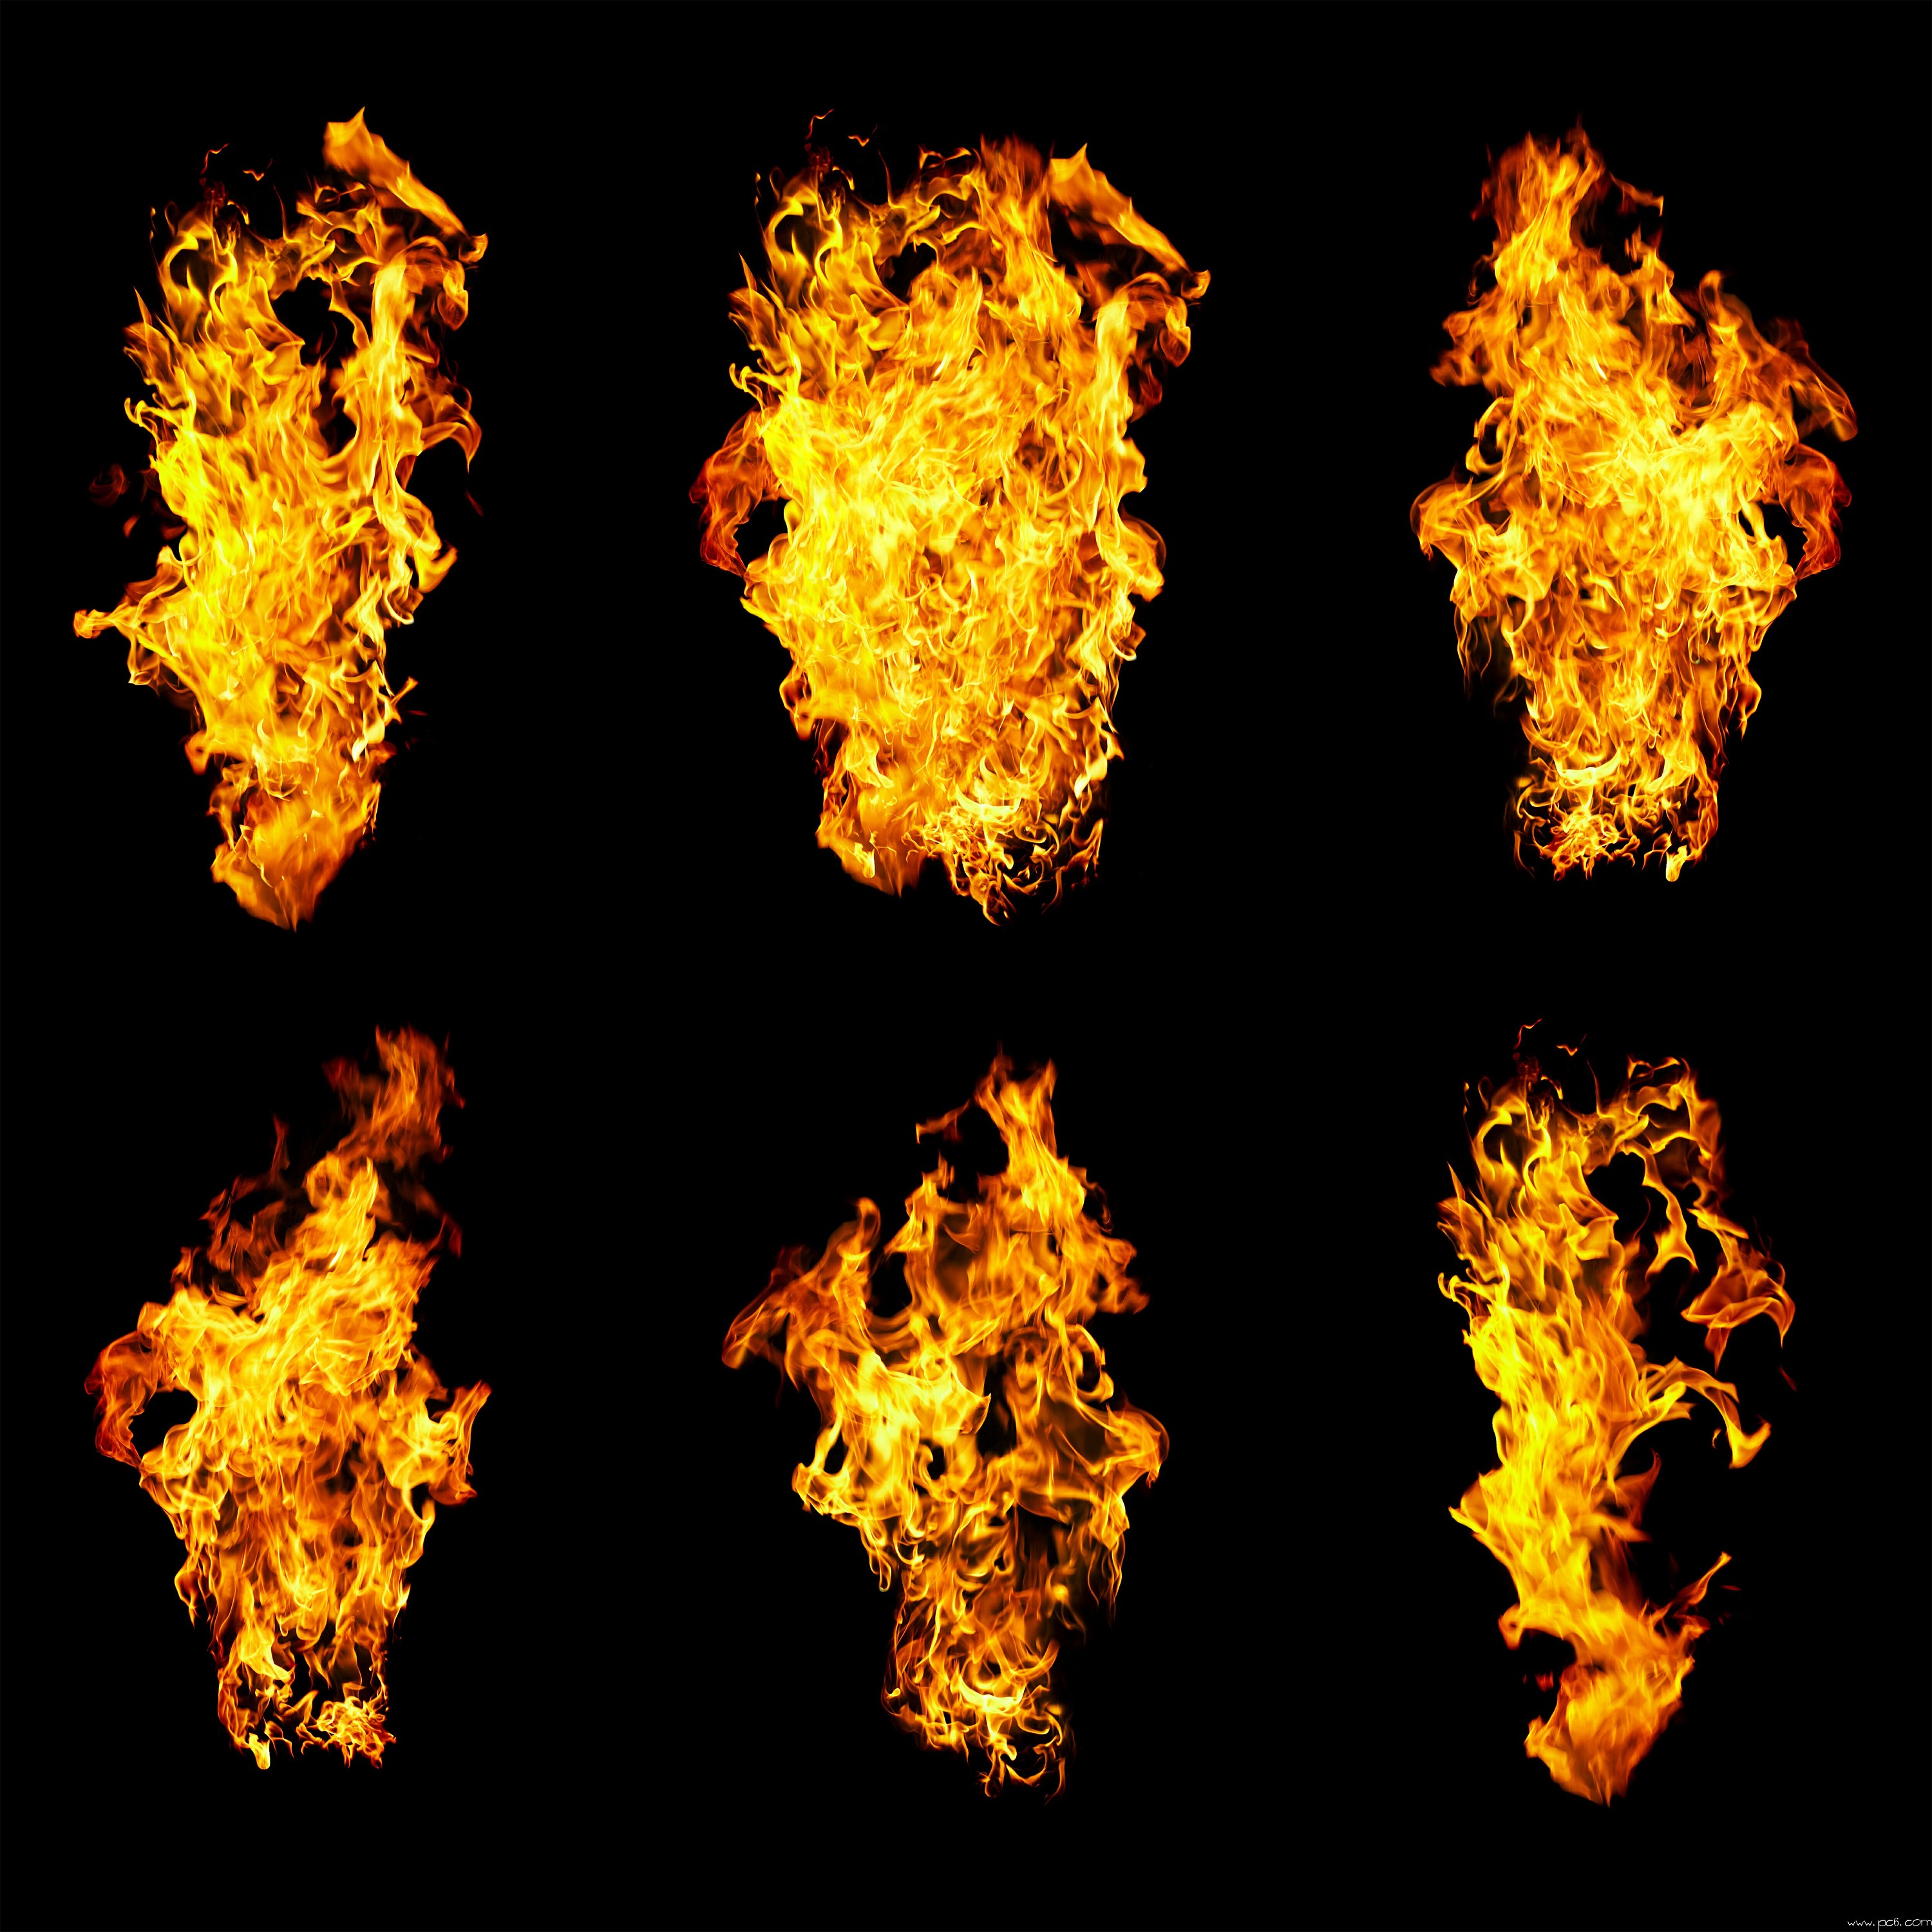 燃烧的火焰素材素材免费下载(图片编号:5060958)-六图网